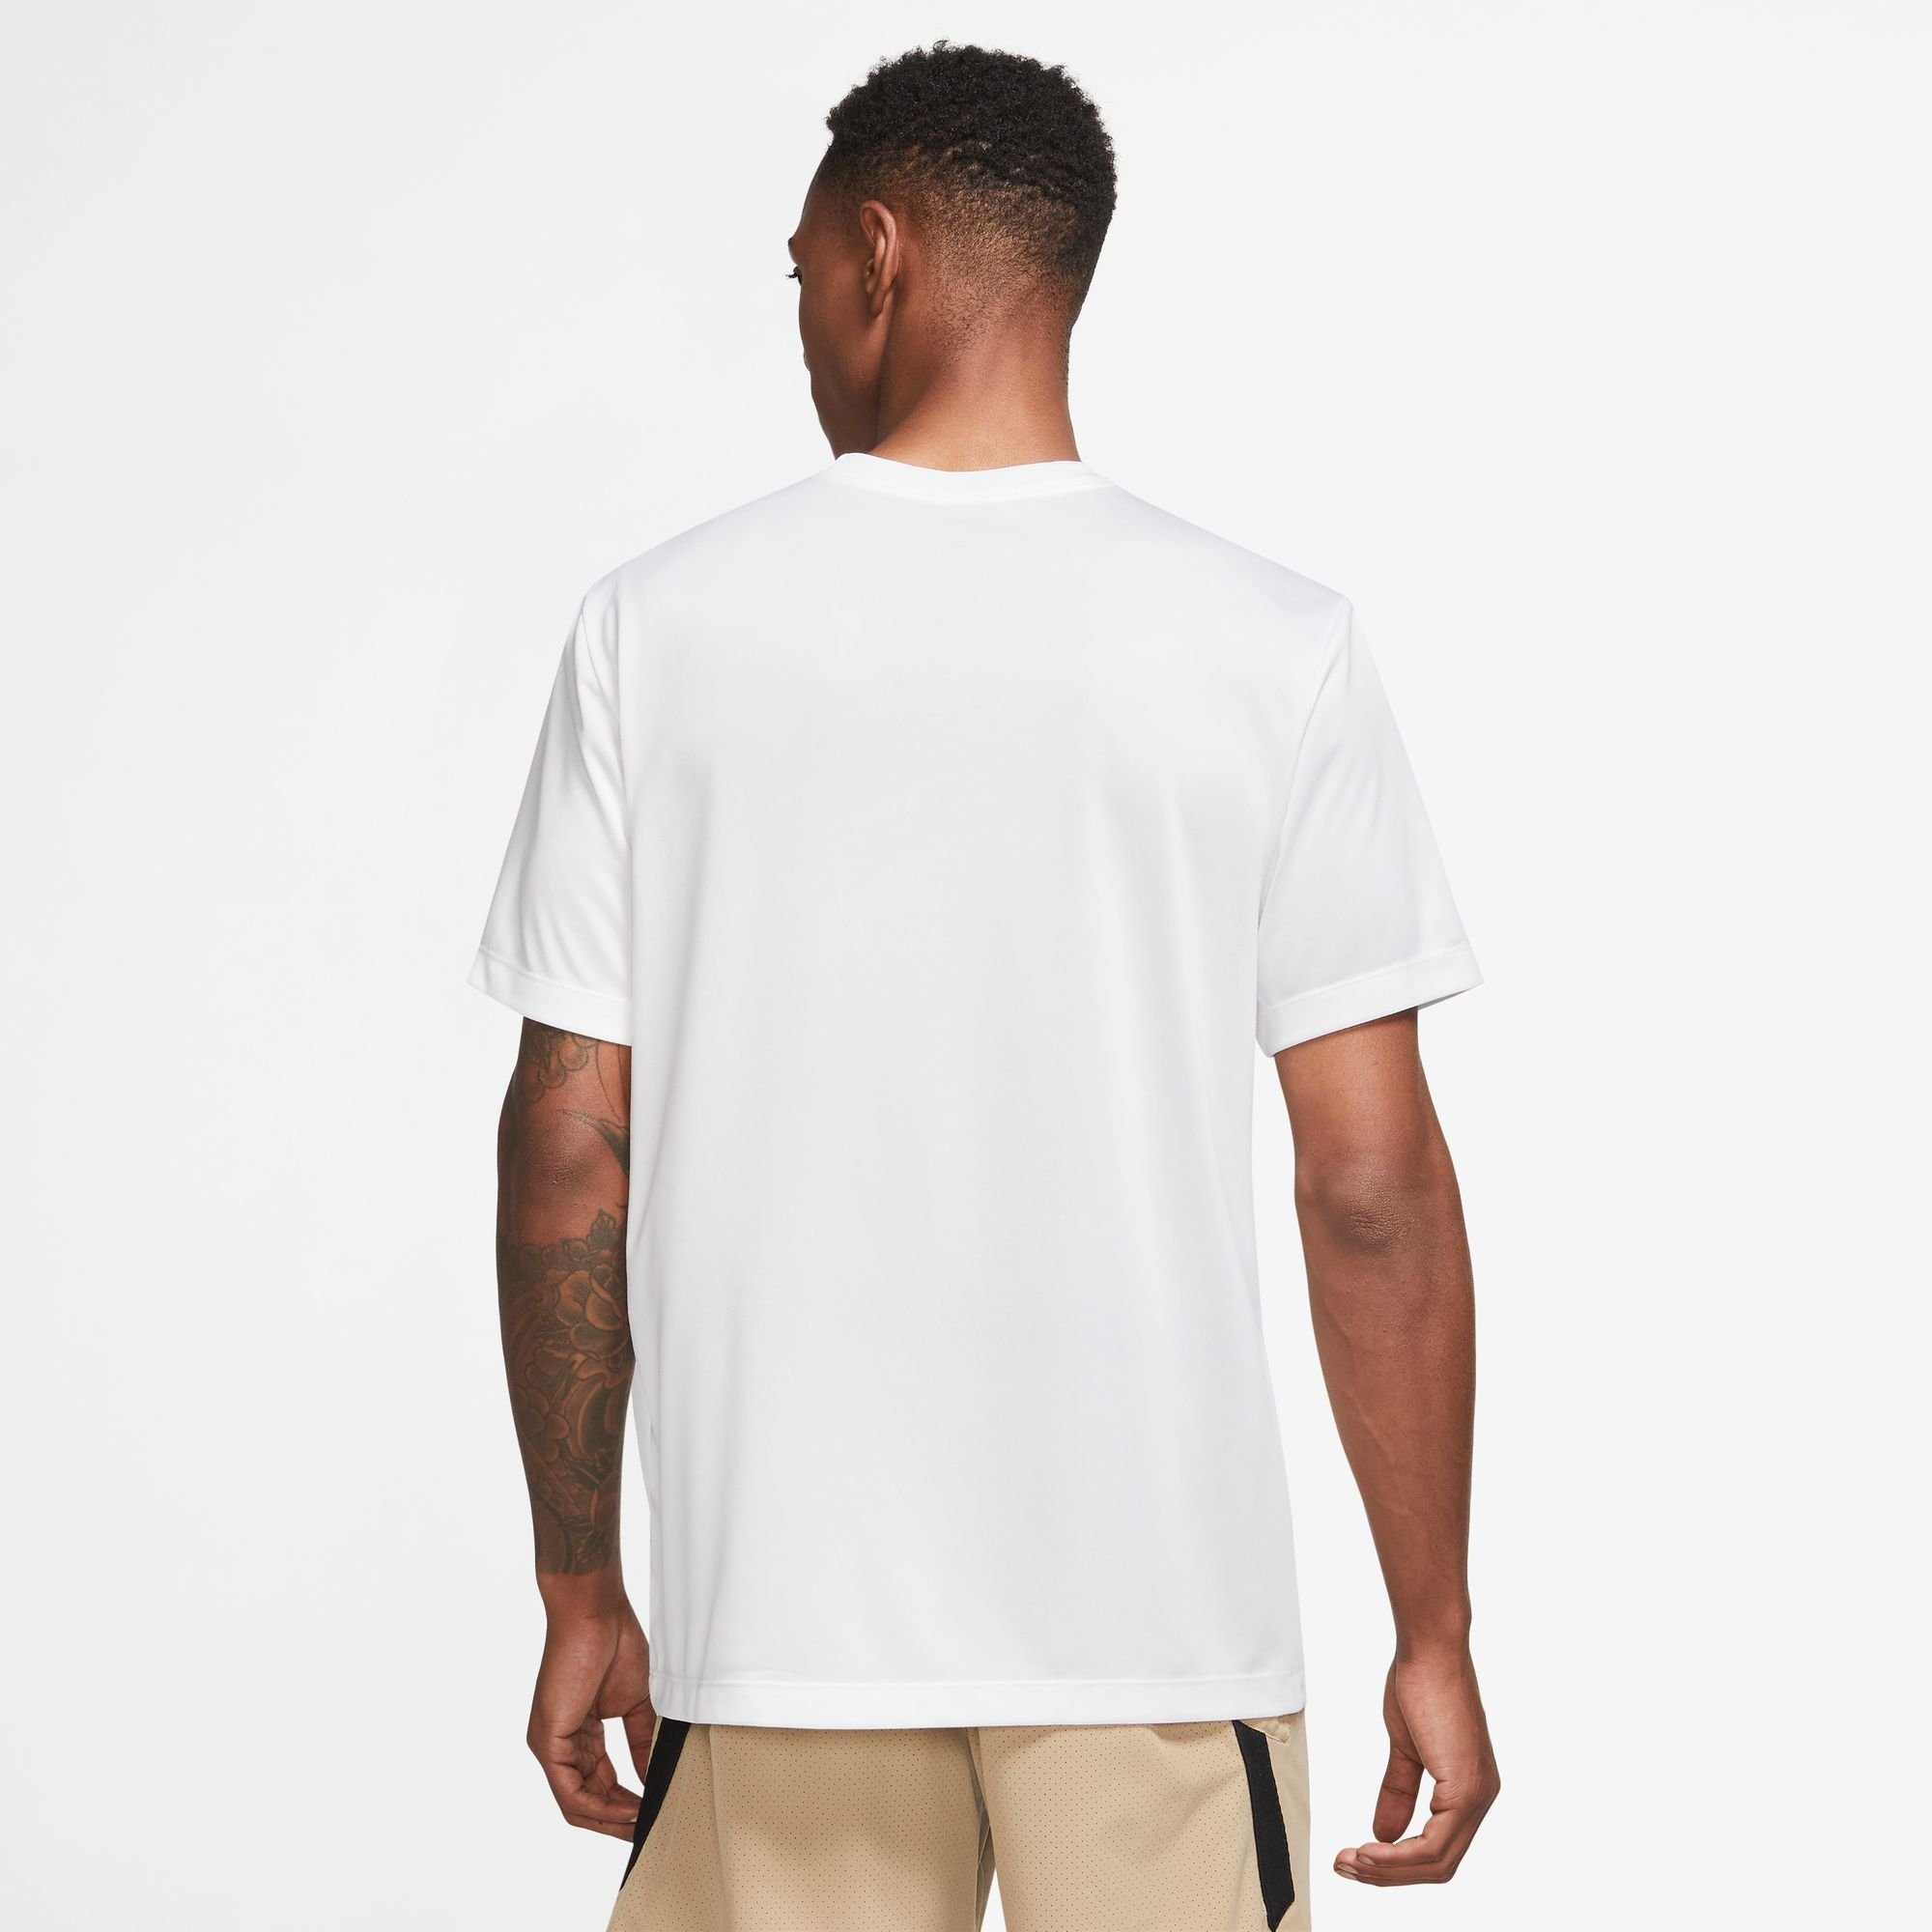 Nike T-SHIRT DRI-FIT Trainingsshirt WHITE/BLACK FITNESS LEGEND MEN'S